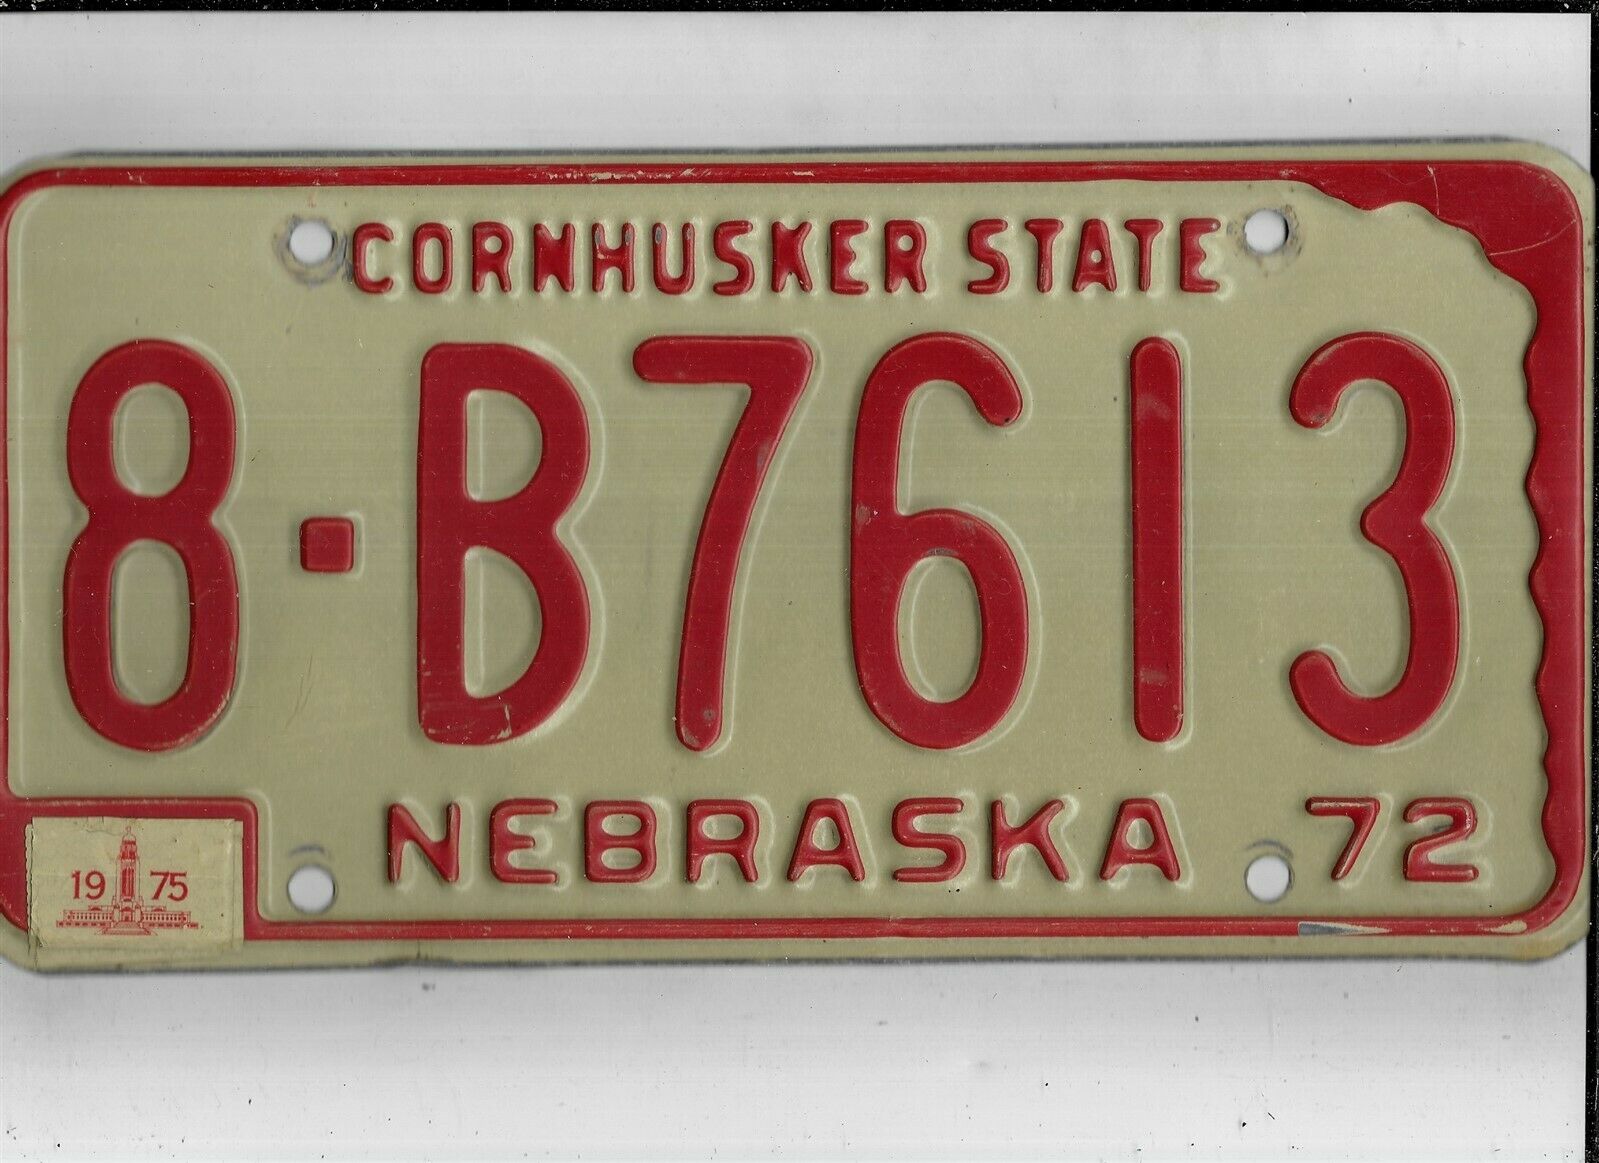 Nebraska Passenger 1975 License Plate "8-b7613" ***hall***